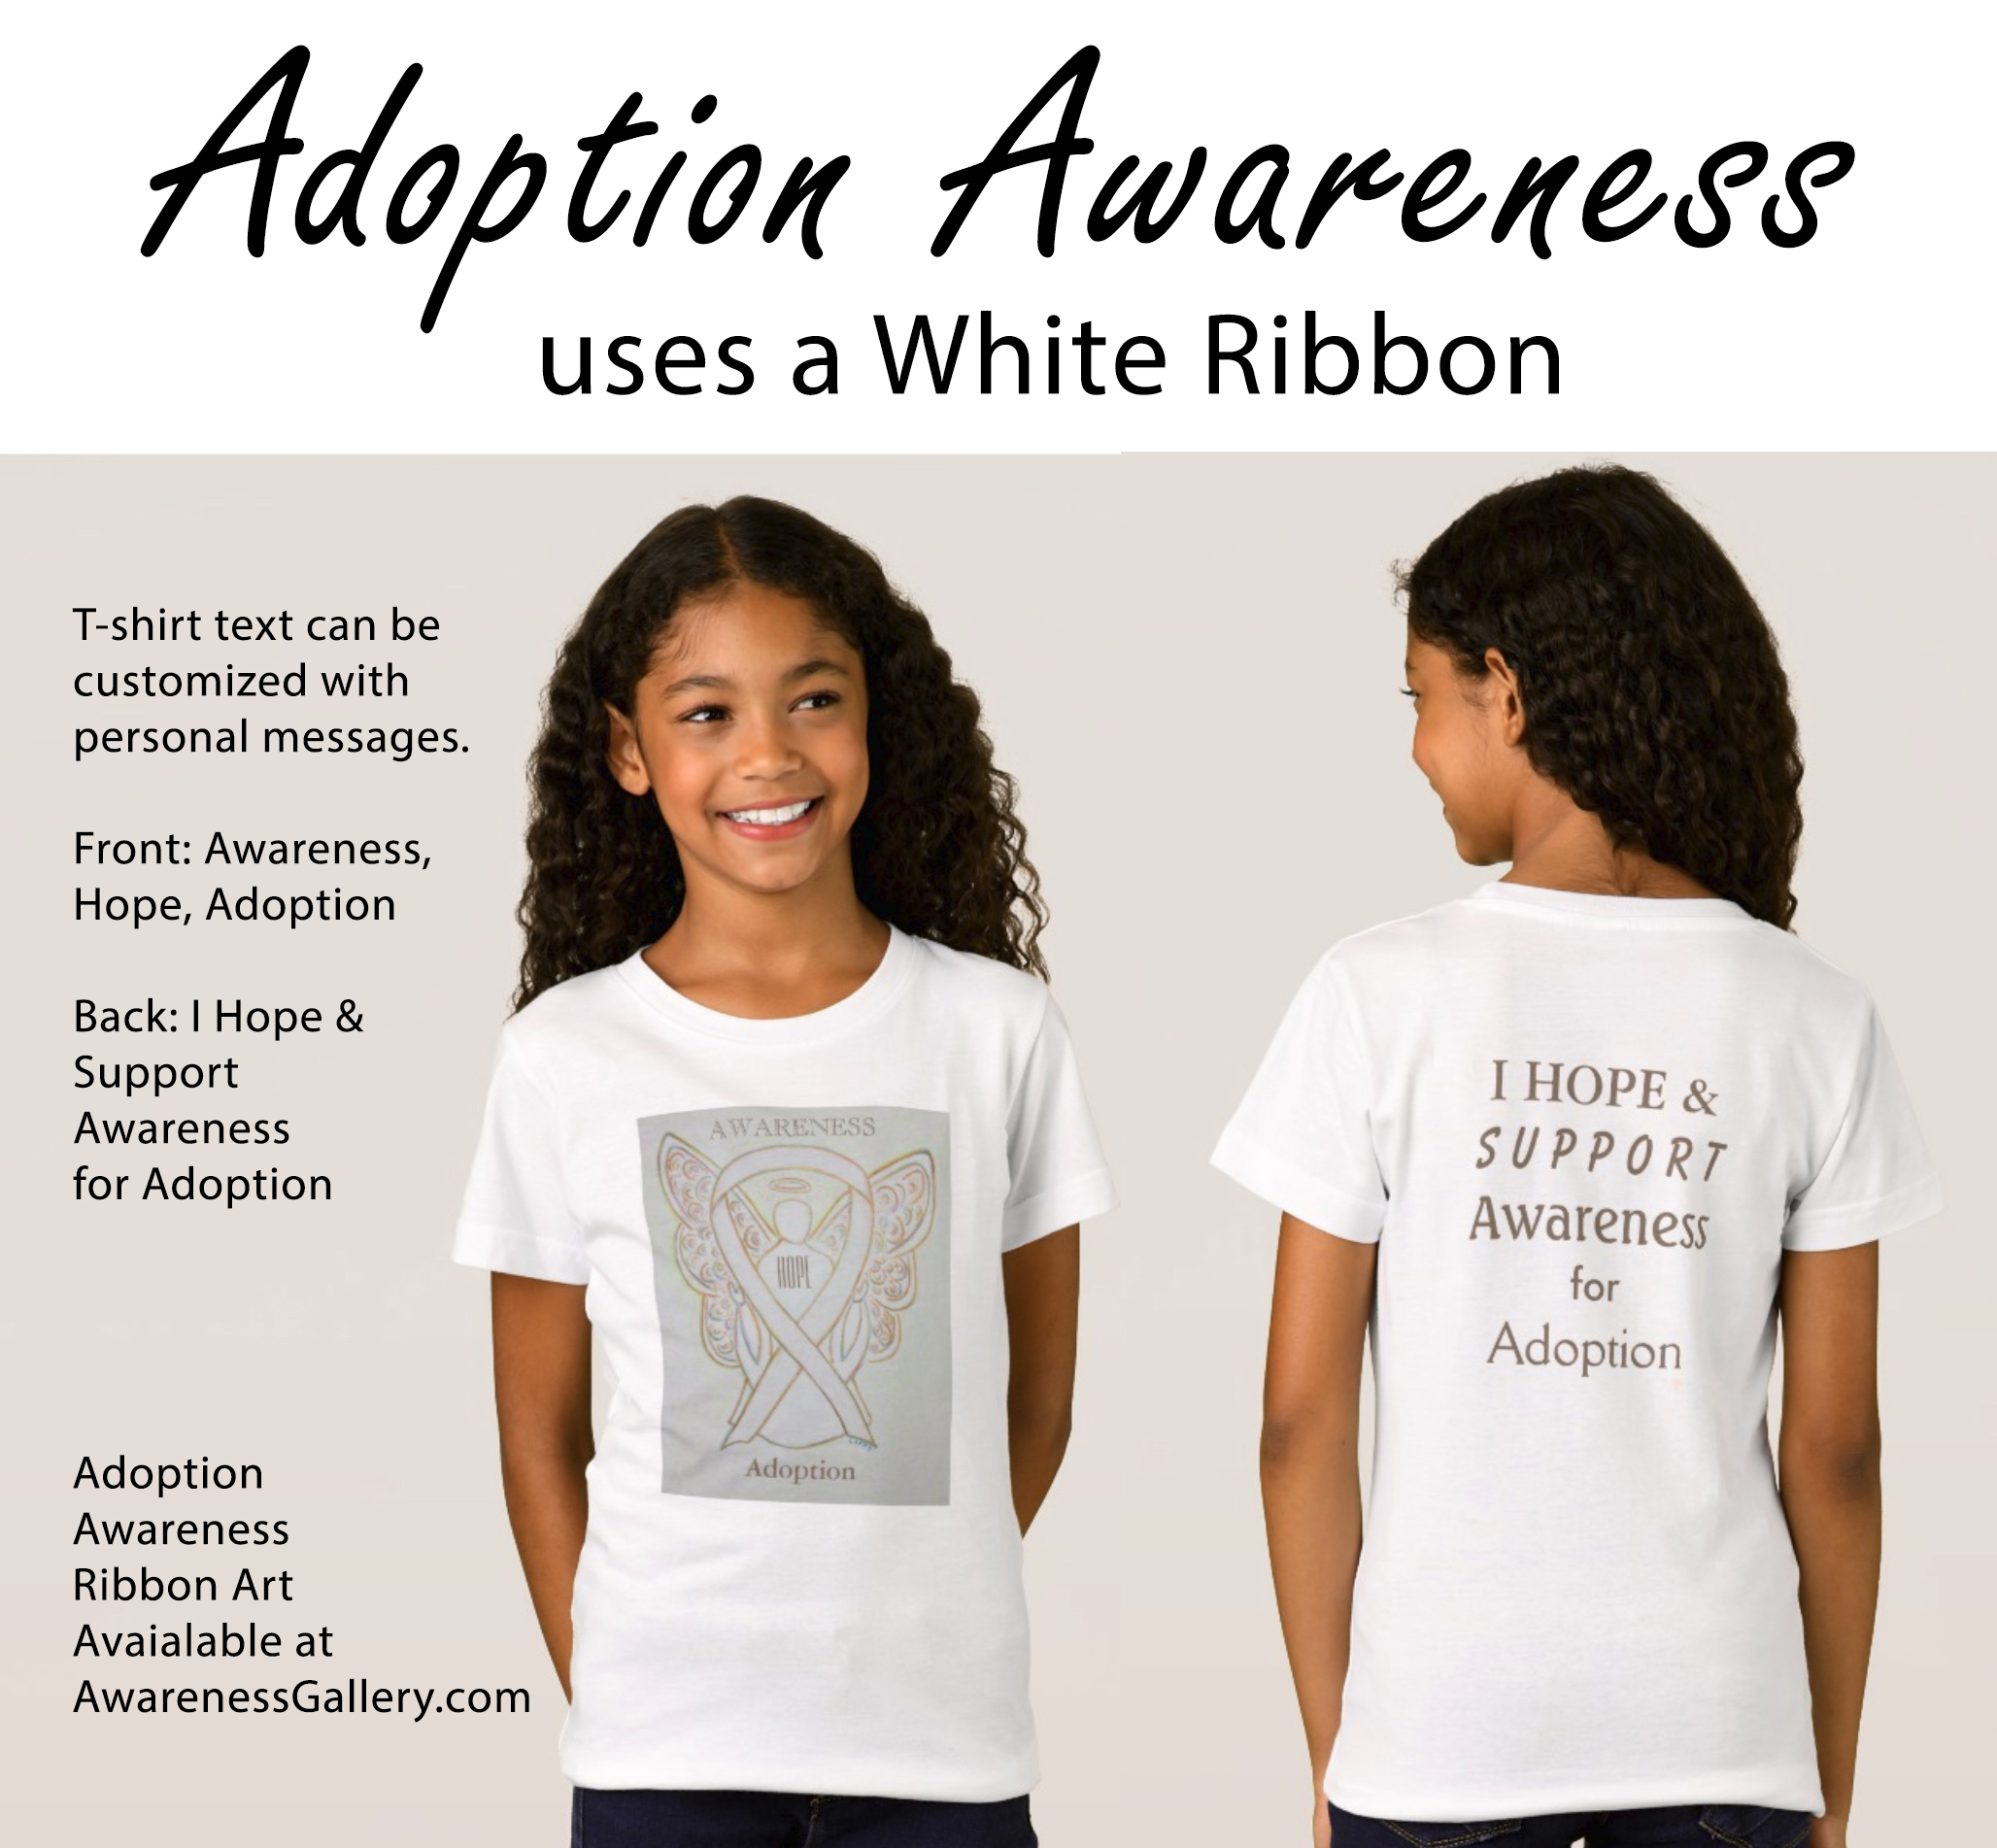 Adoption Awareness White Ribbon - Make Custom Adoption Awareness Clothing & Gifts!